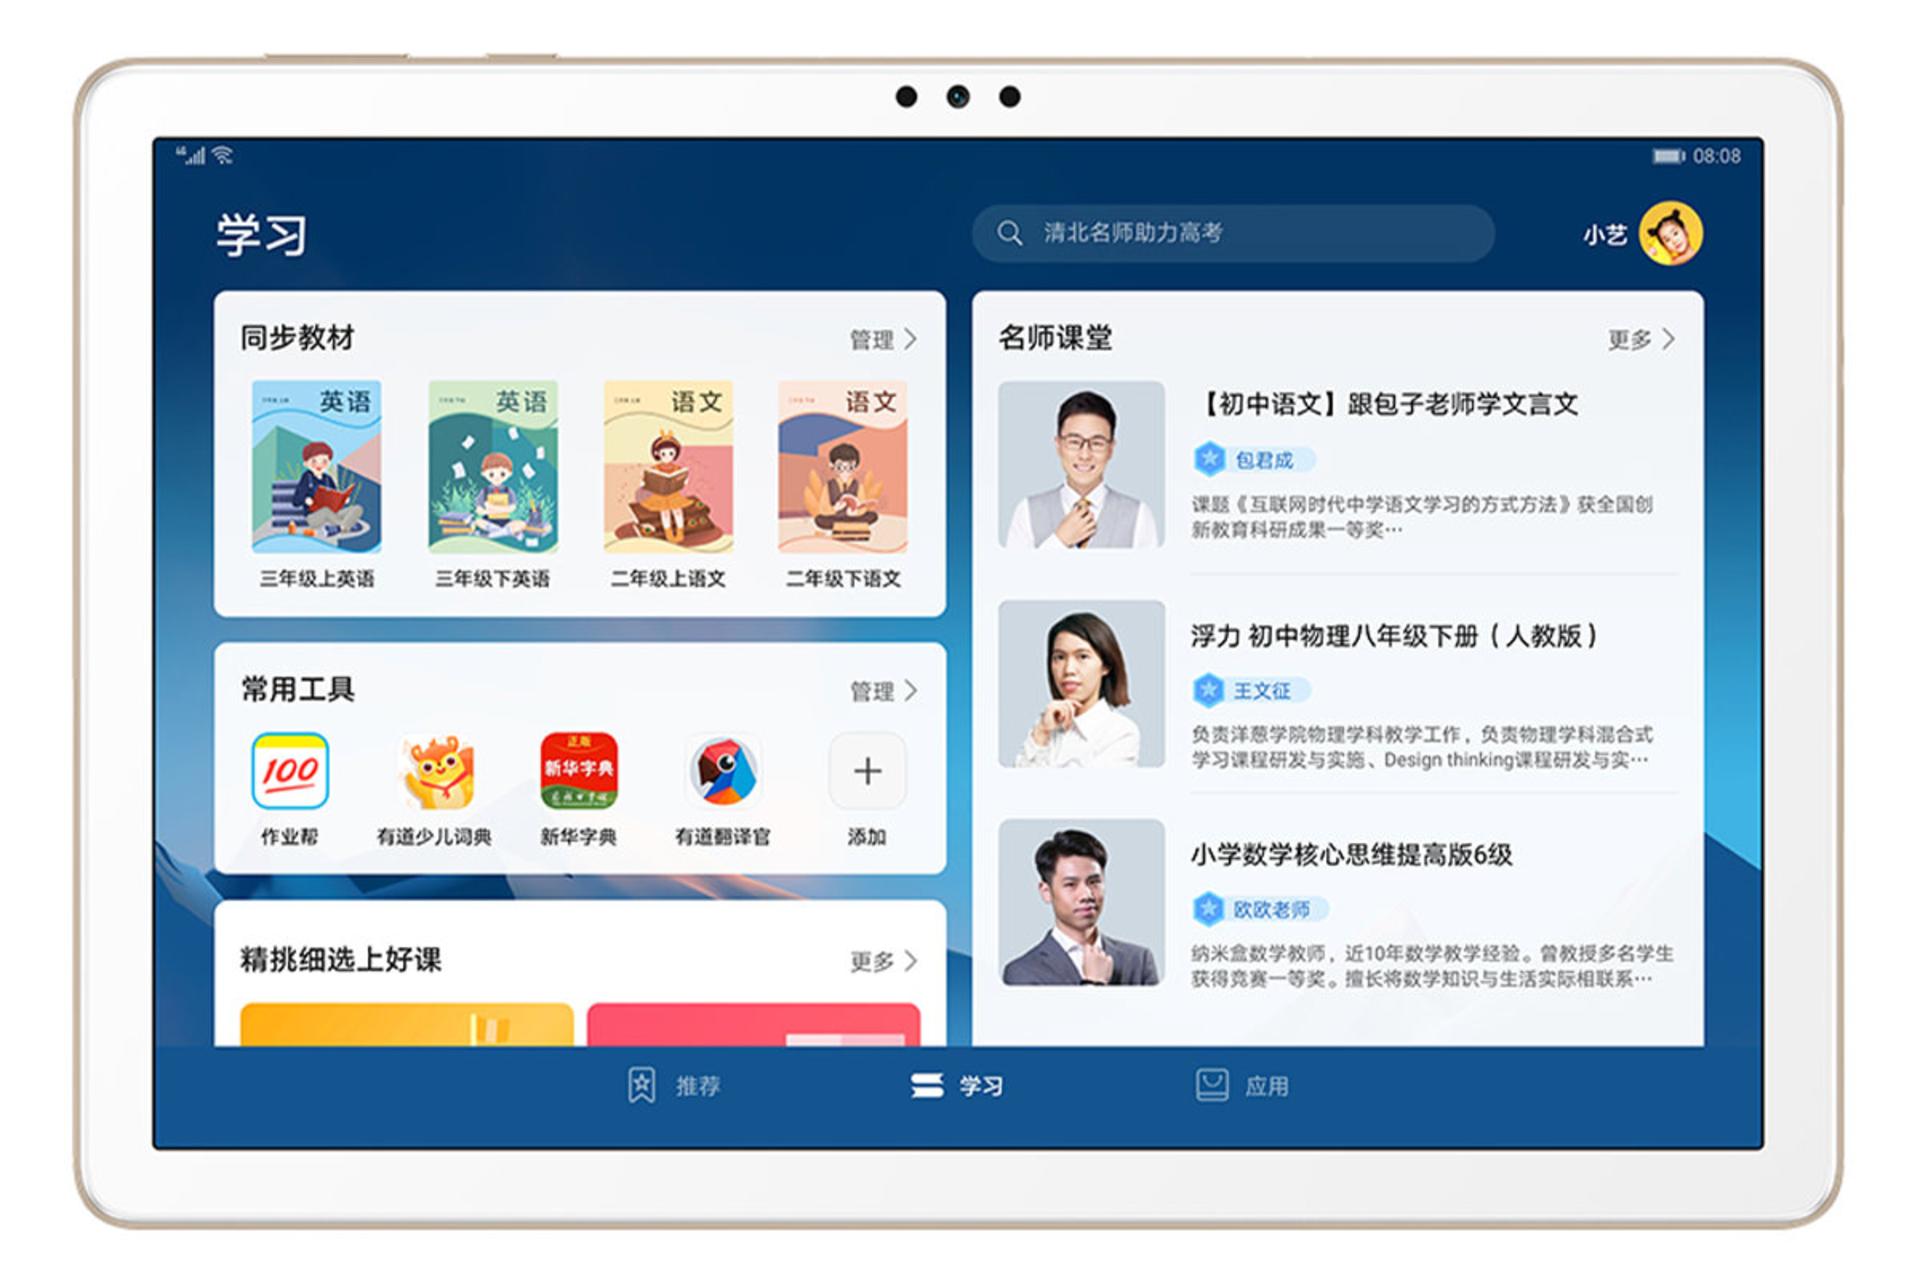 تبلت اینجوی تبلت 2 هواوی صفحه نمایش در حال نمایش اپلیکیشن / Huawei Enjoy Tablet 2